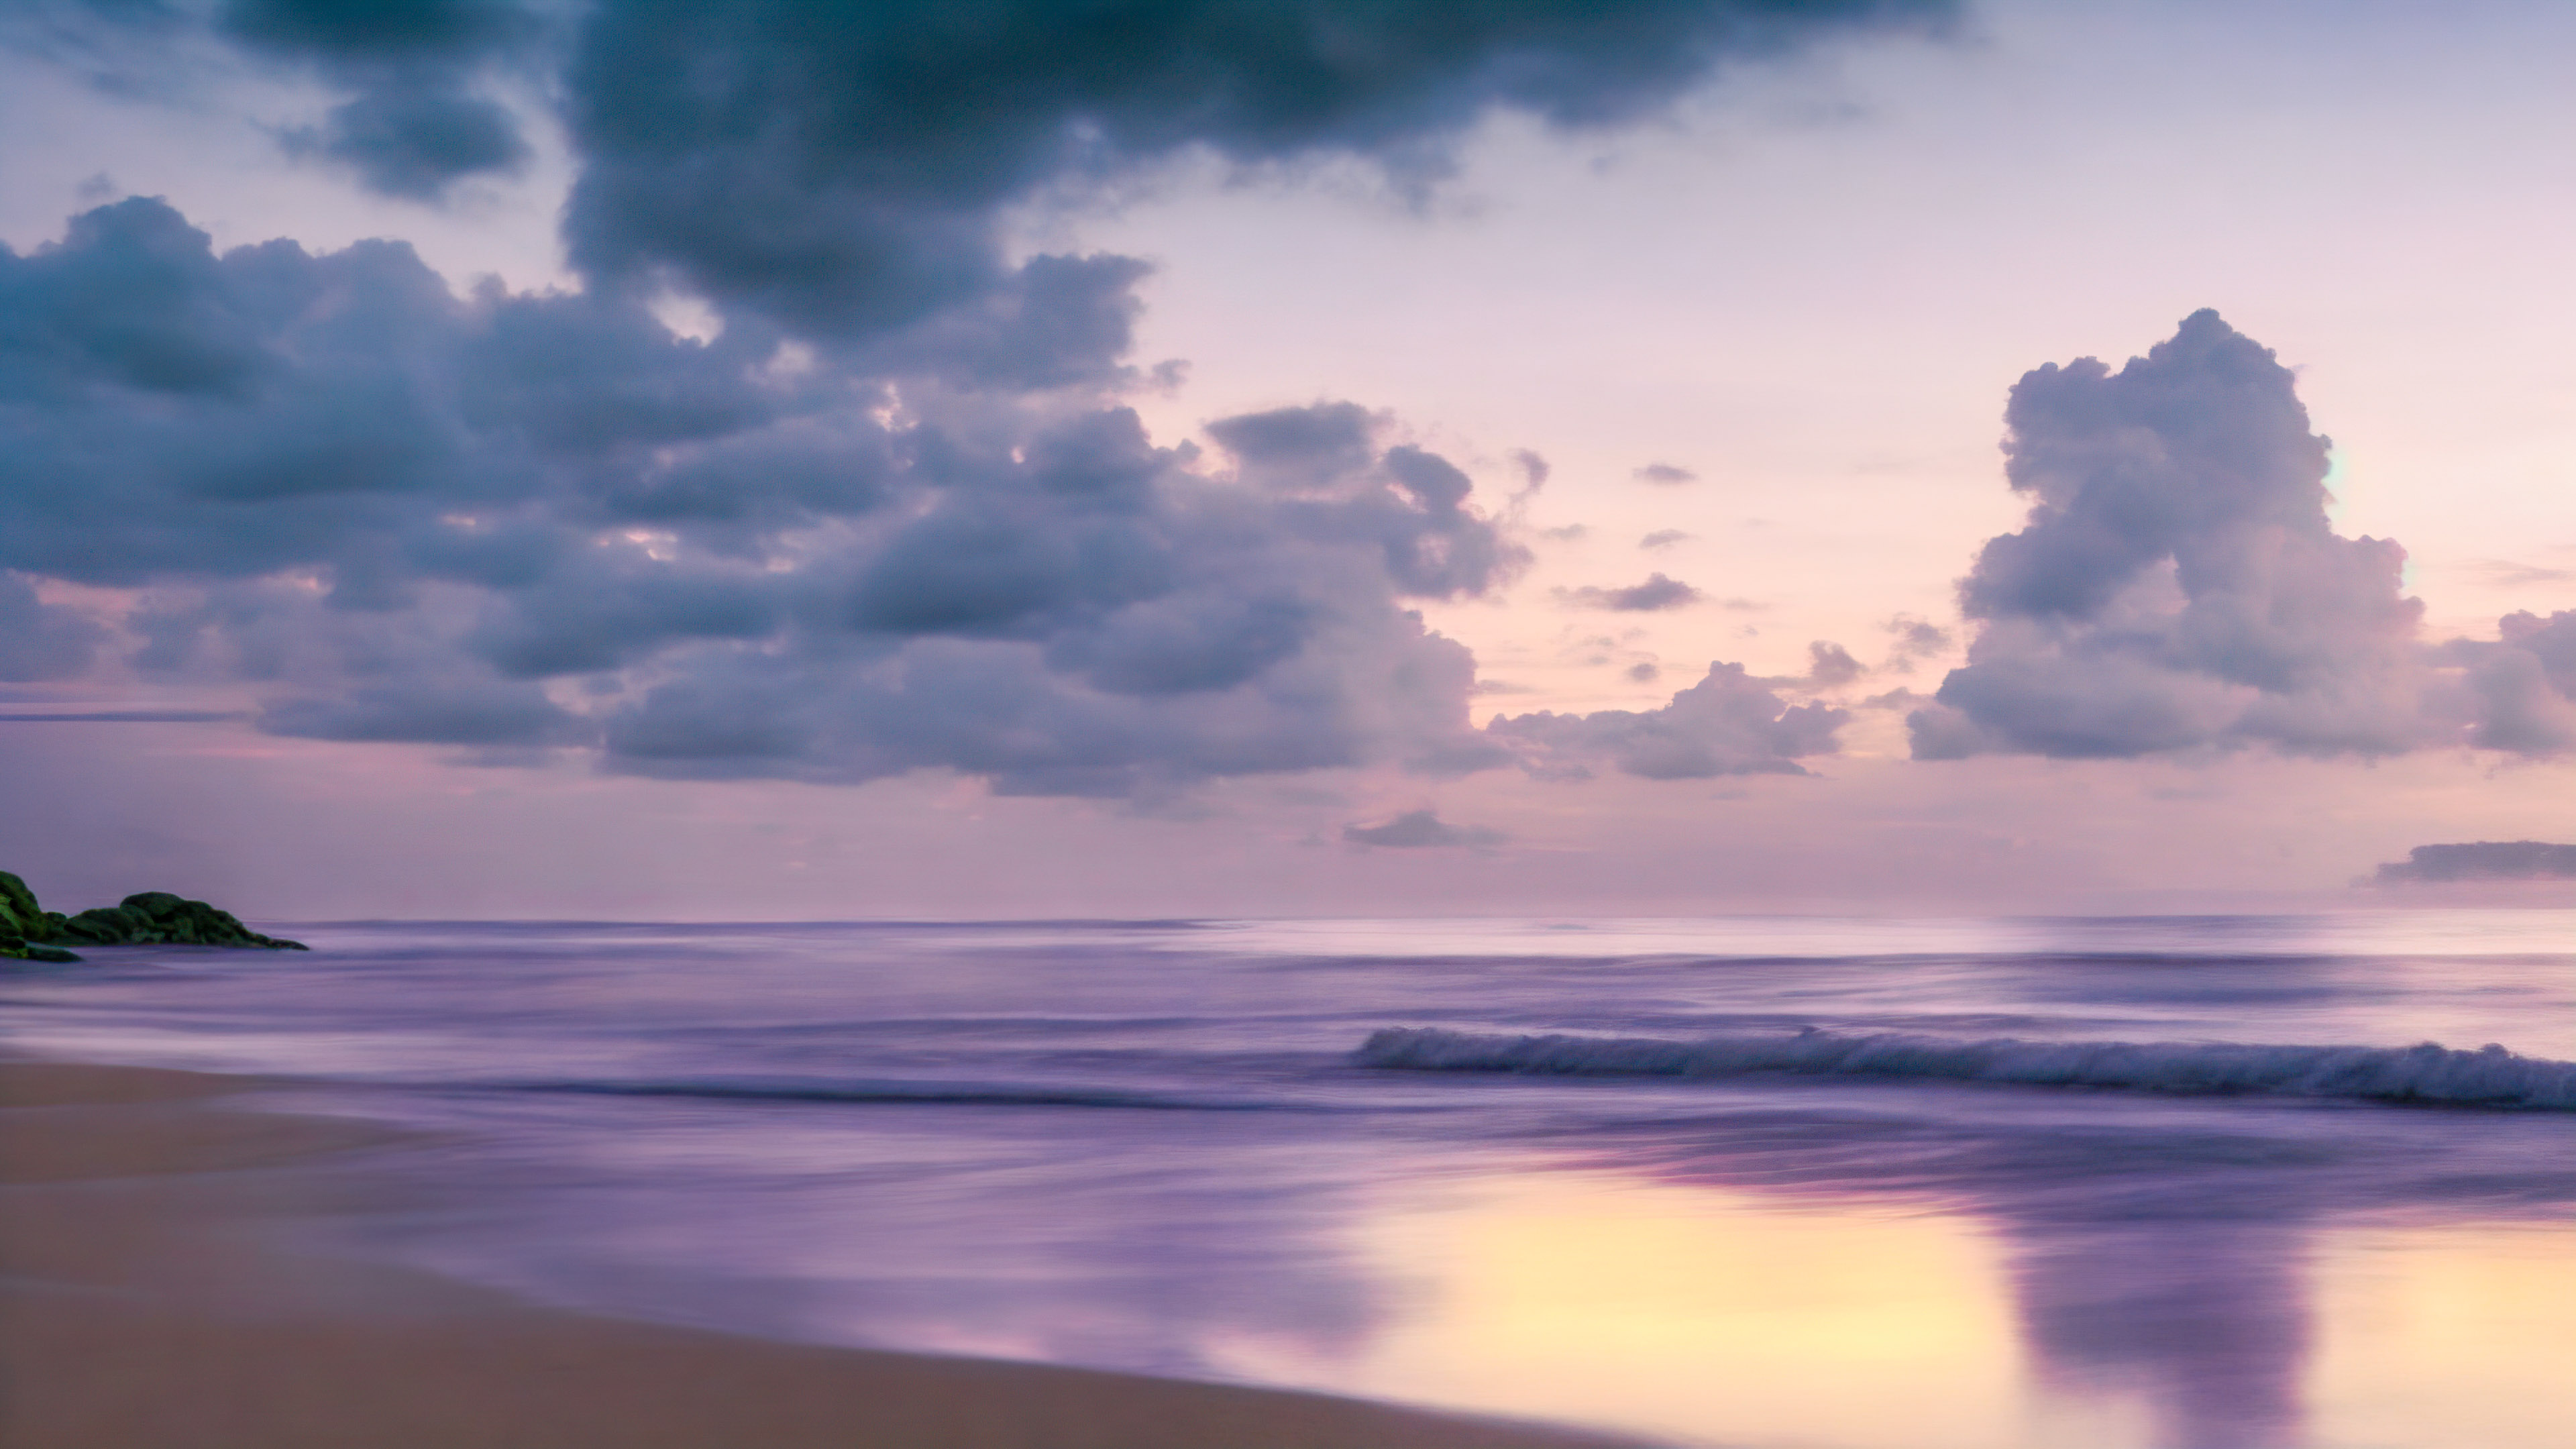 Transformez l'écran de votre appareil avec notre fond d'écran de ciel en 4K, présentant une plage tranquille au crépuscule, avec le ciel peint en nuances de violet et de rose. 